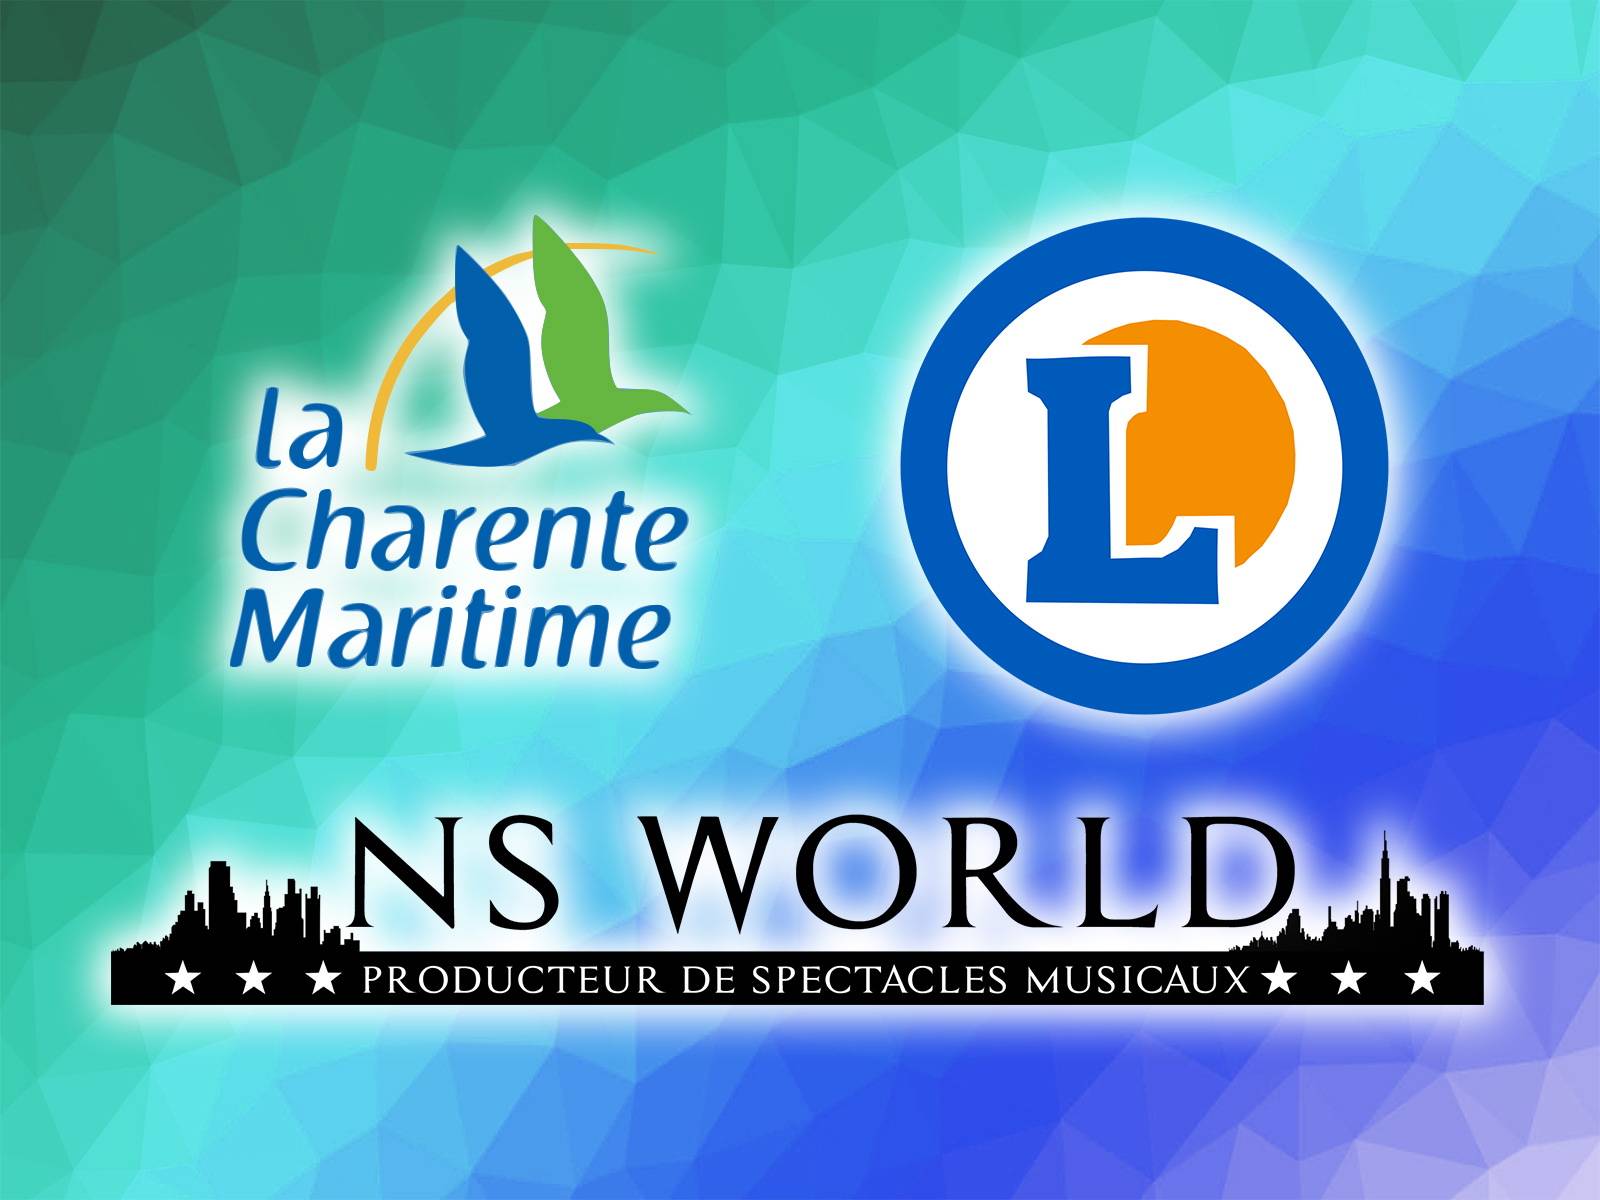 Les hypermarchés E.Leclerc de Charente-Maritime (17) ont fait appel à NS World pour d'incroyables spectacles musicaux (partie 2/2)